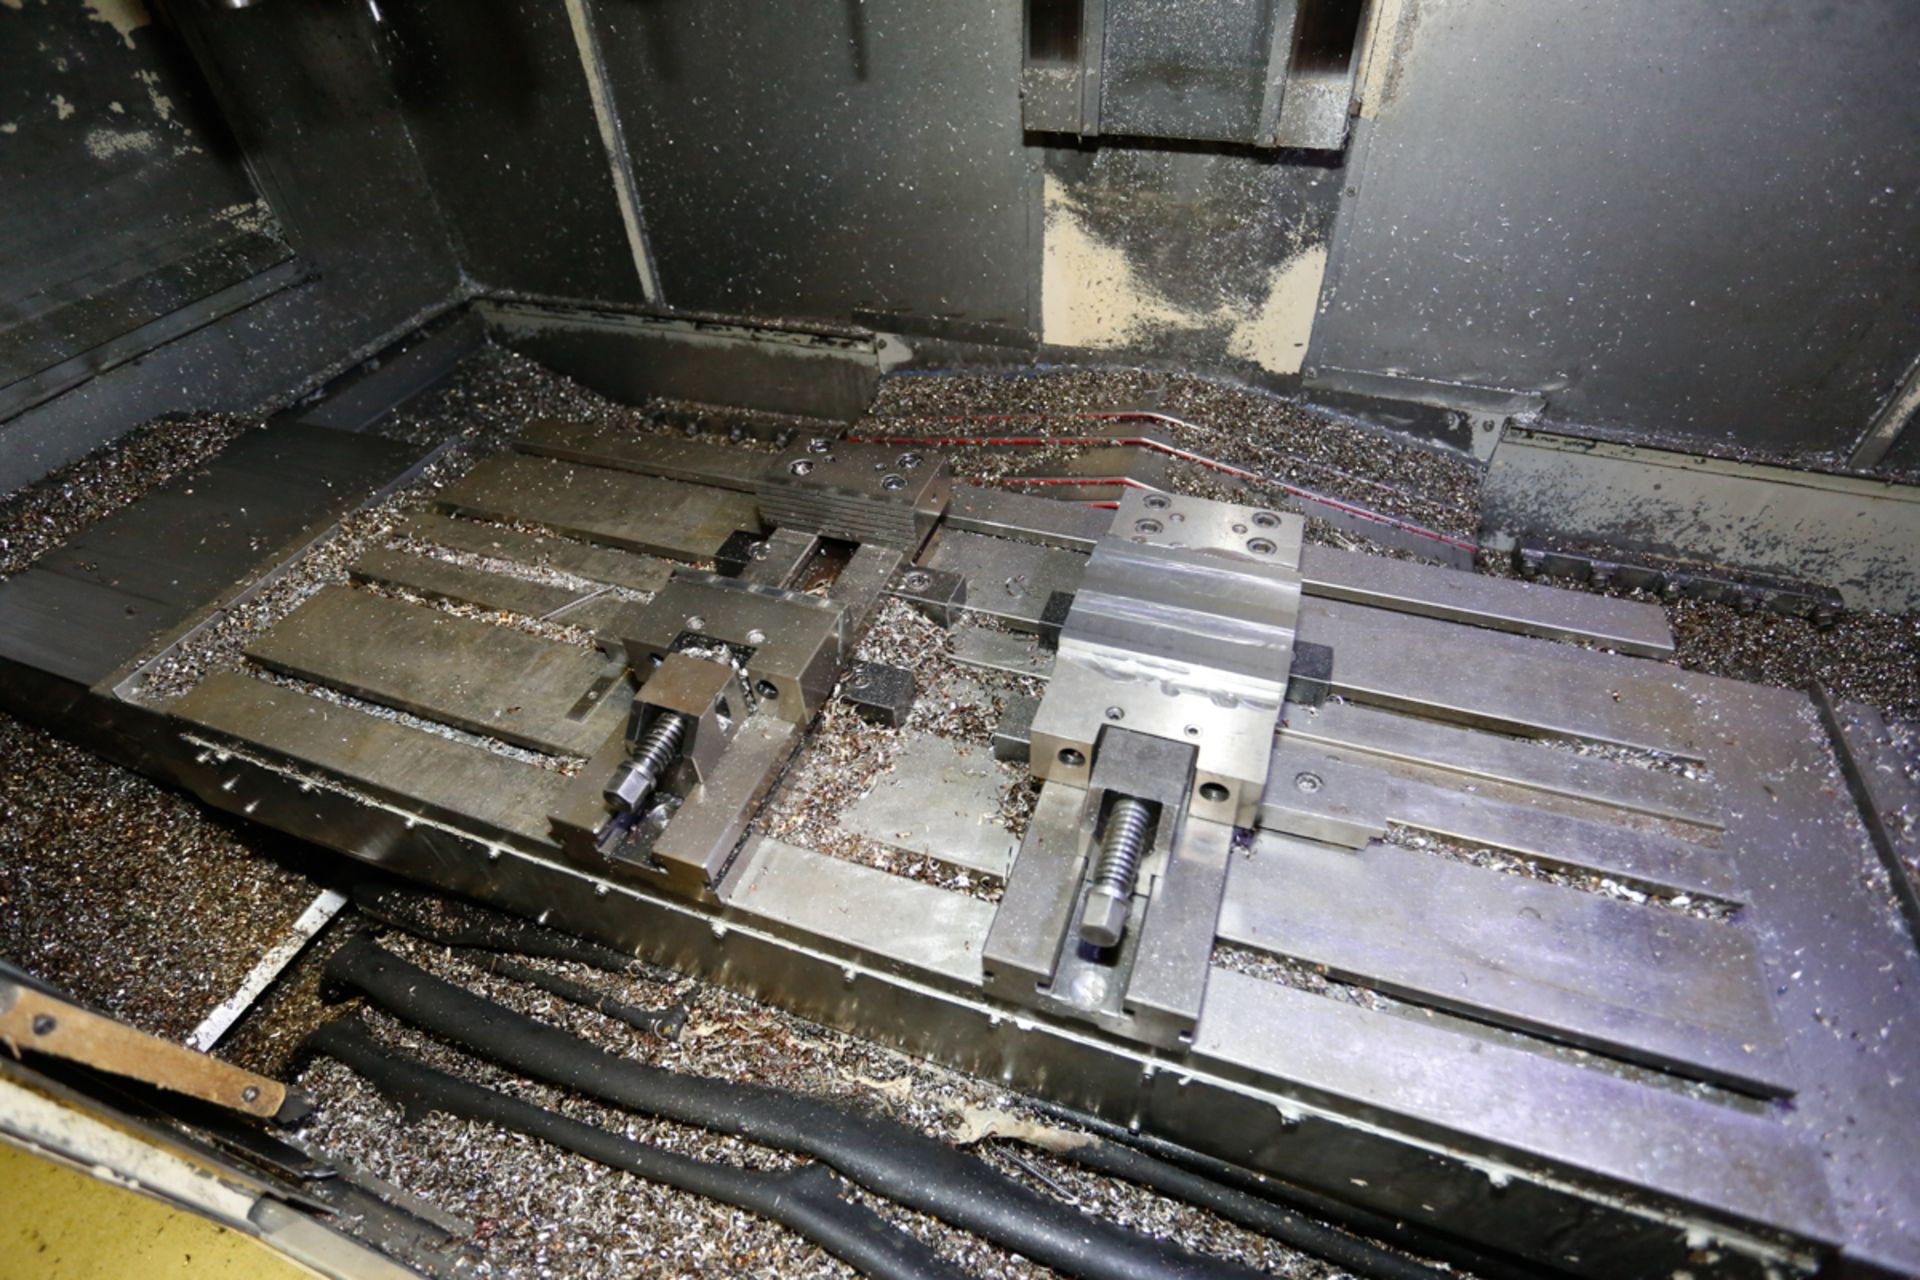 OKUMA 4 AXIS CNC VERTICAL MACHINING CENTER MOD. CADET MATE 2040, S/N: 0443, 47" X 20" TABLE, OKUMA - Bild 3 aus 9